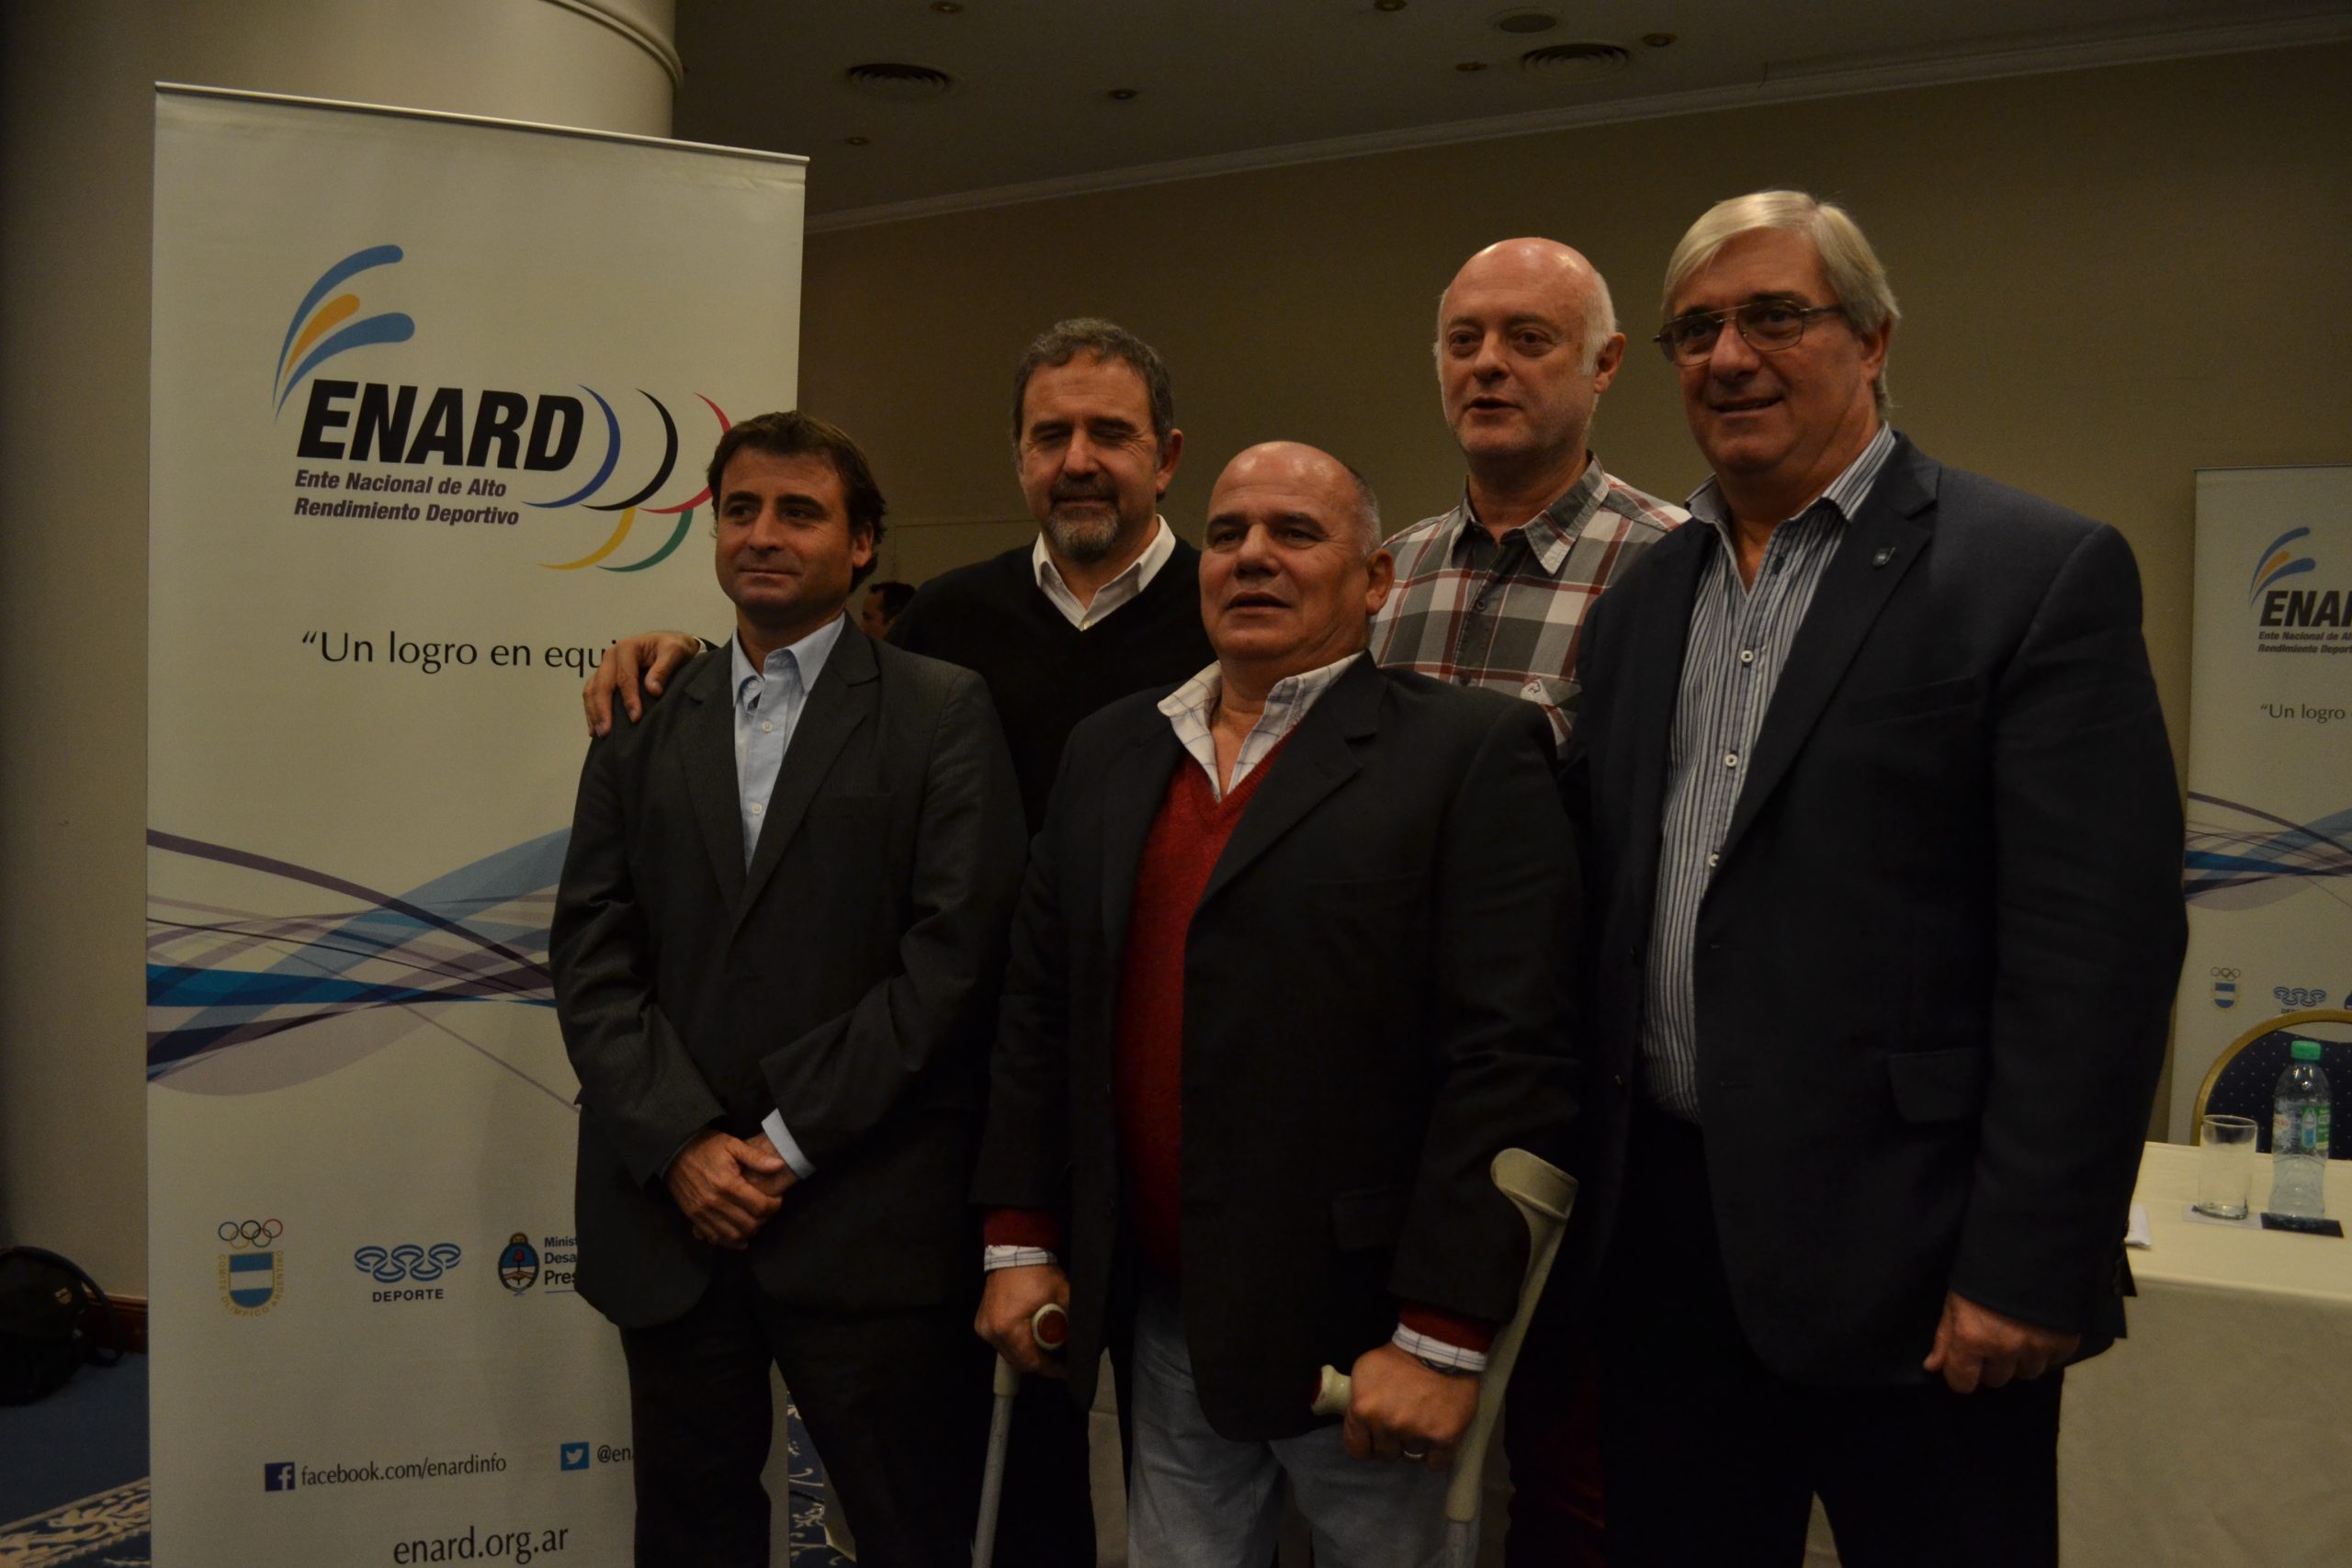 Nota: La delegación Argentina lista para Toronto 2015